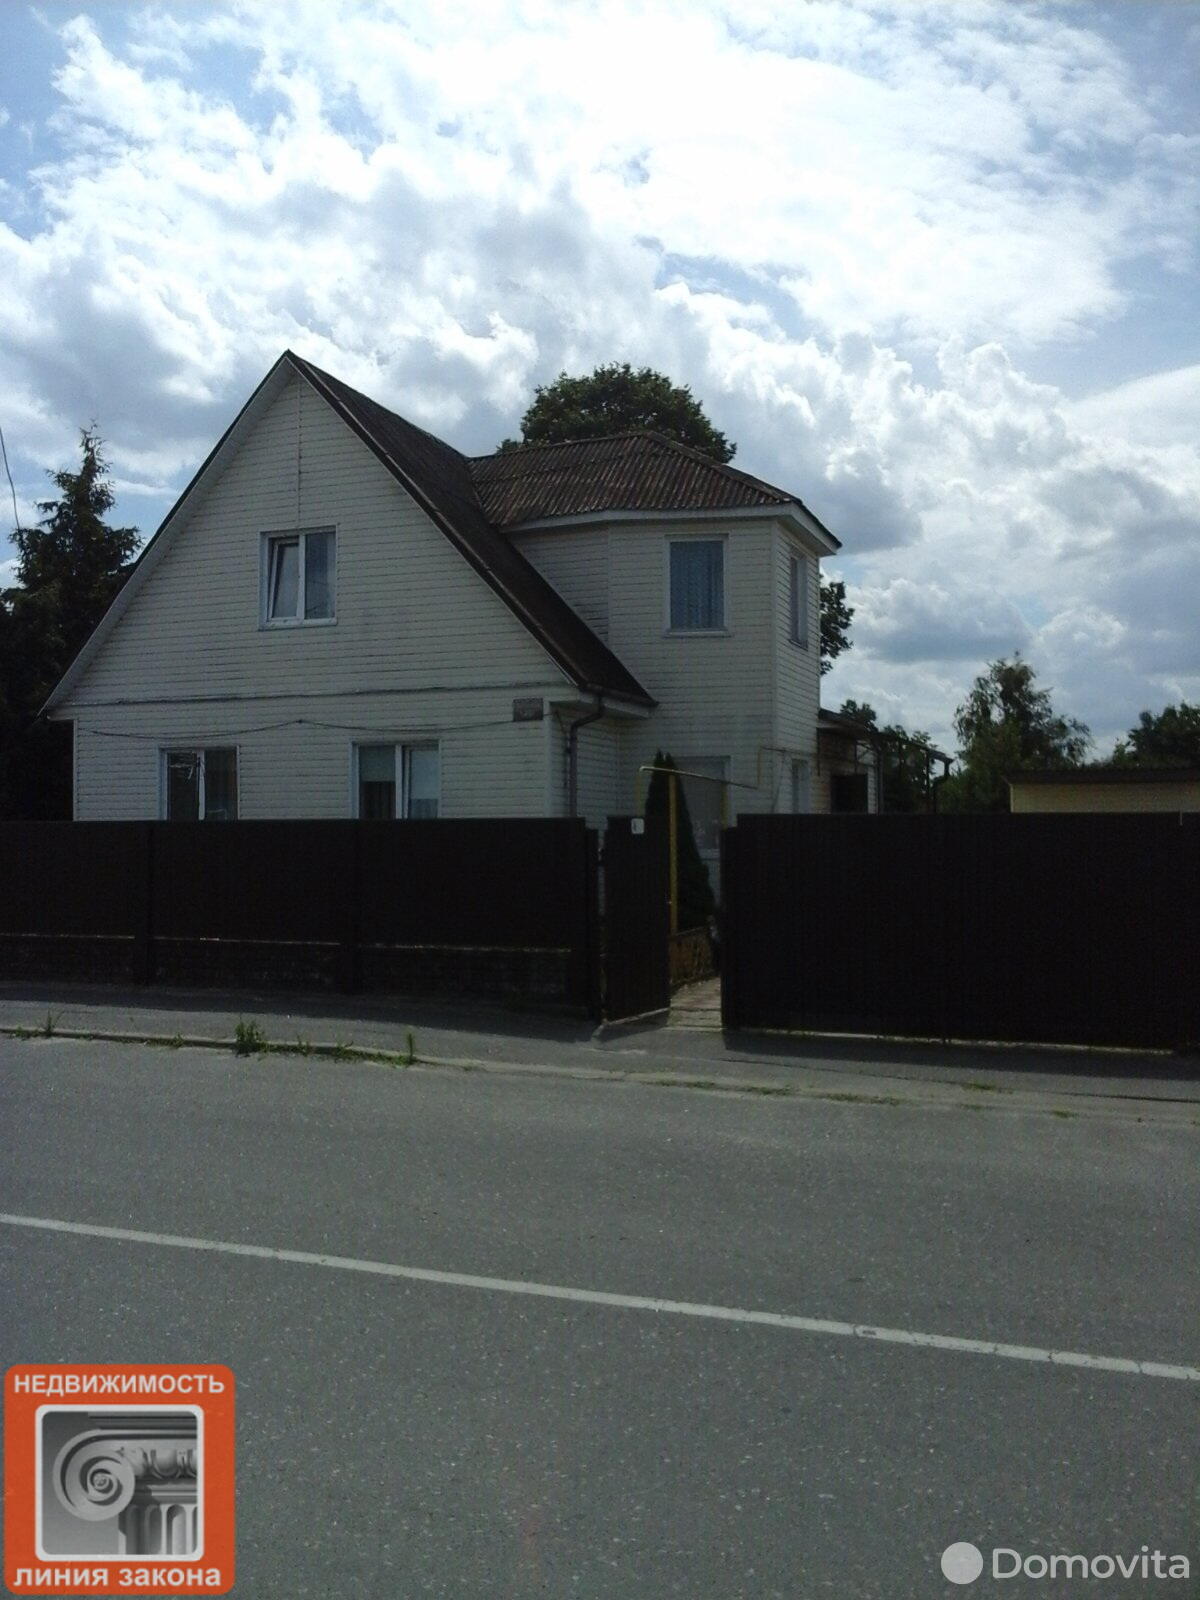 Продать 2-этажный дом в Петрикове, Гомельская область ул. Липунова, 38000USD - фото 2